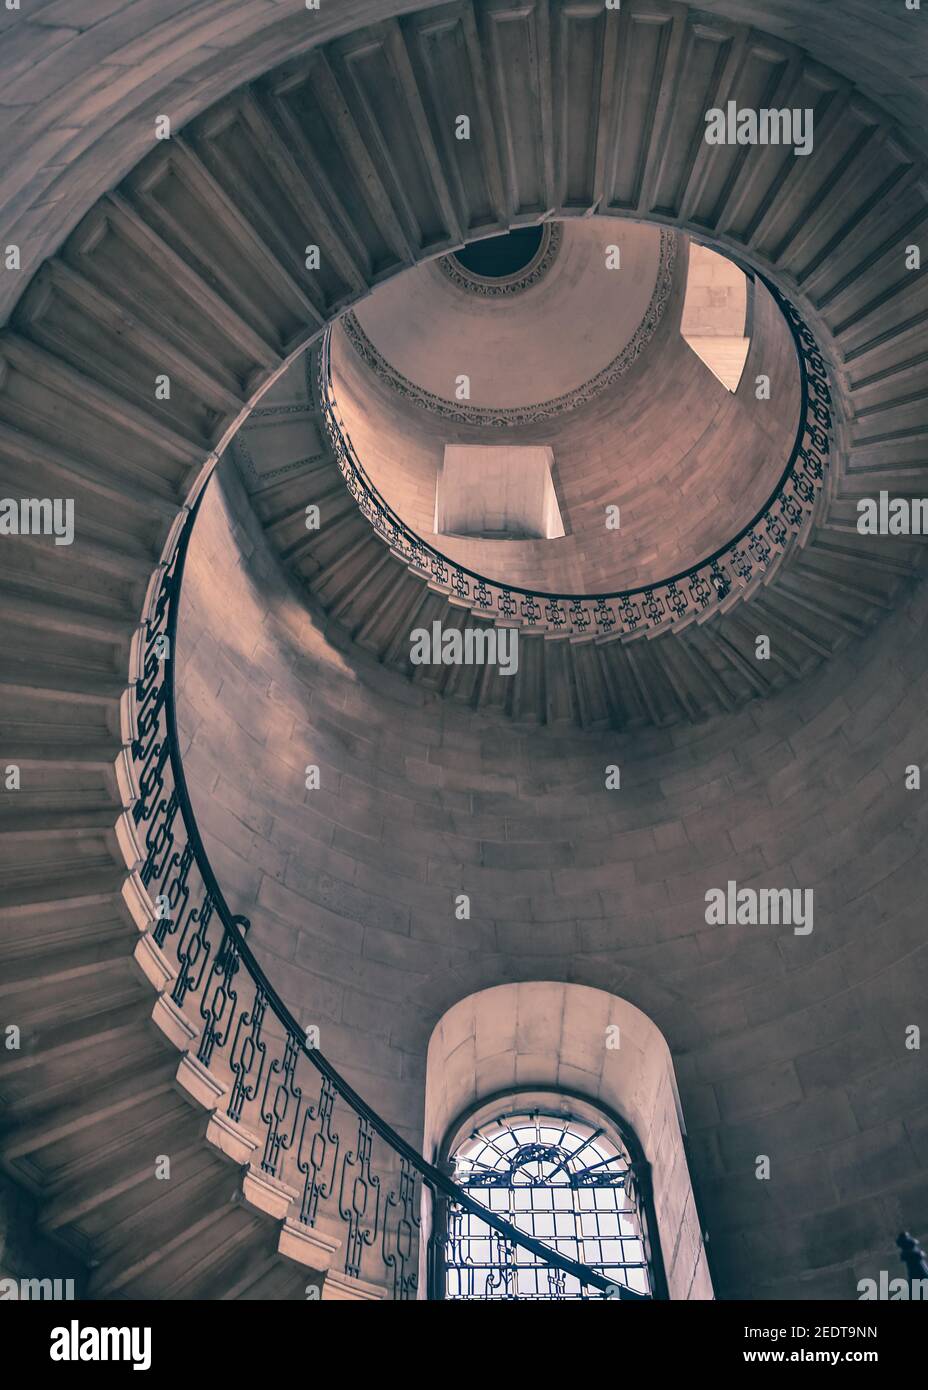 Die Dean's Staircase, St Paul's Cathedral, sehen Sie die Wendeltreppe hinauf, die in den Harry Potter Filmen, London, Großbritannien, als das Treppenhaus der Weissagung berühmt wurde Stockfoto